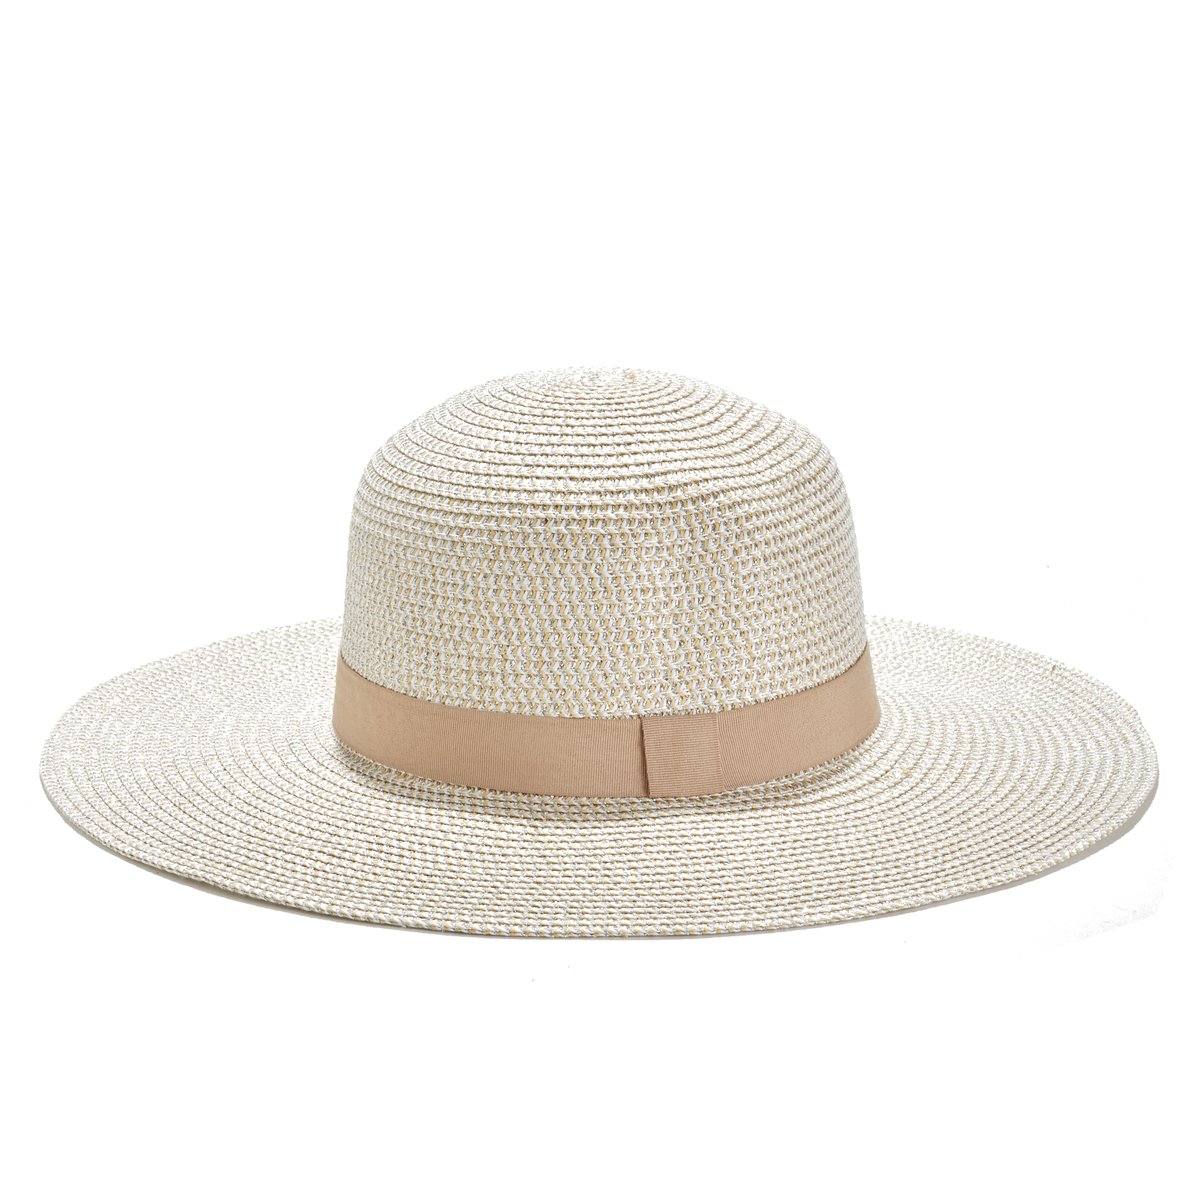 La hat. Шляпа канотье женская белая. Шляпа соломенная женская канотье на спине.